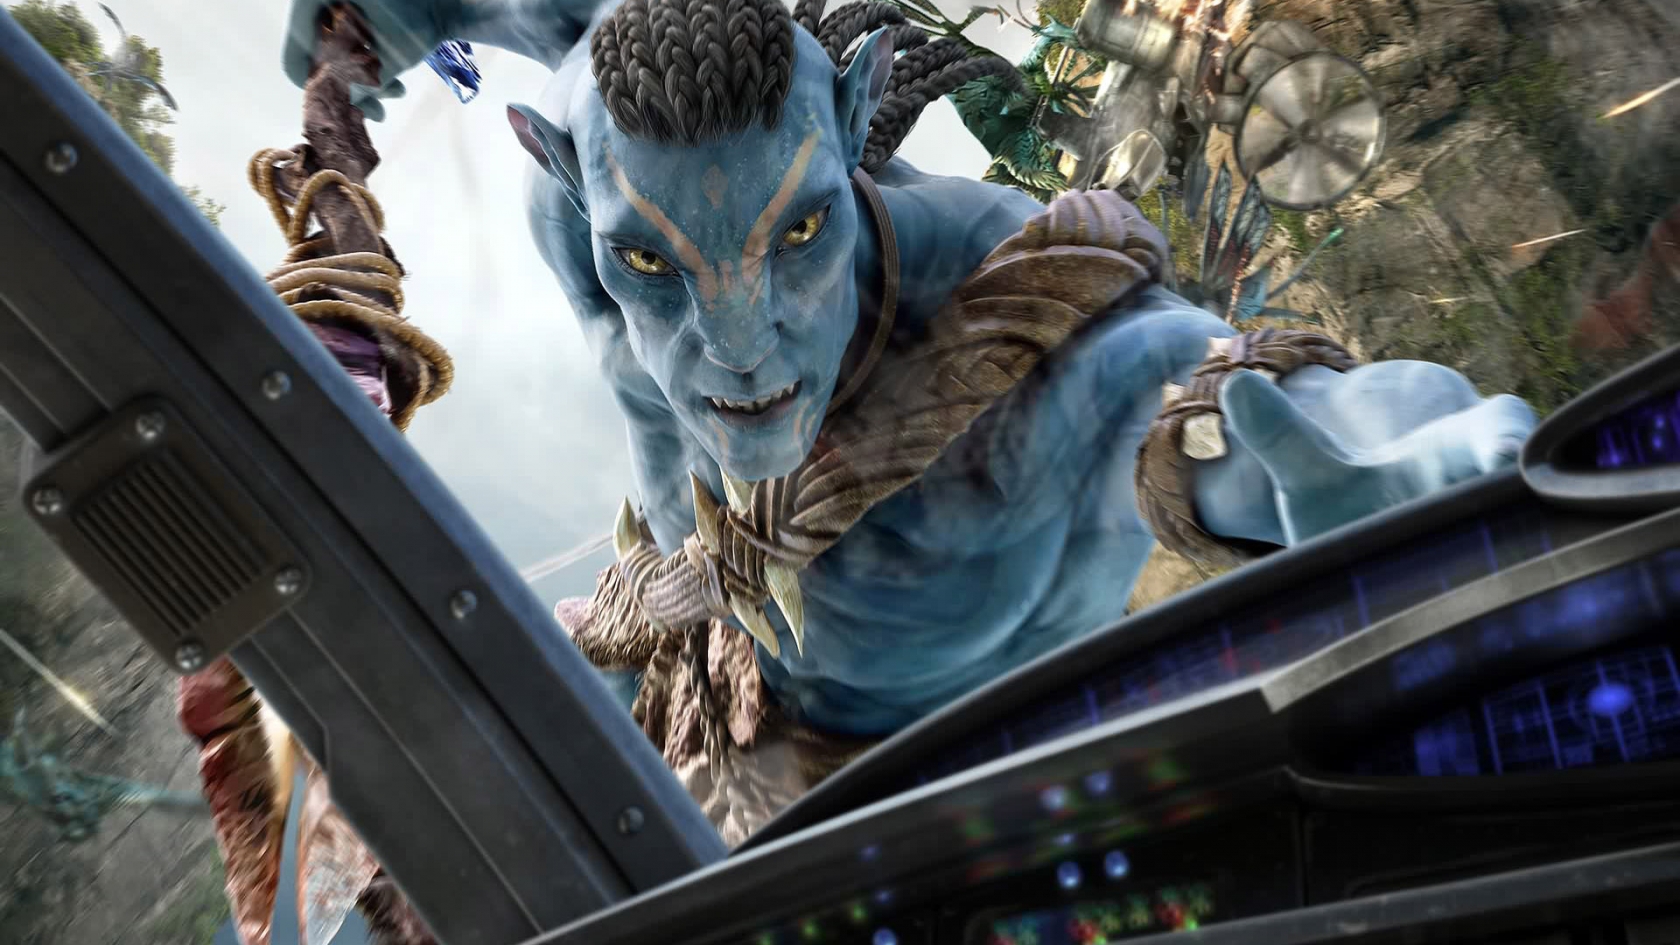 Avatar for 1680 x 945 HDTV resolution